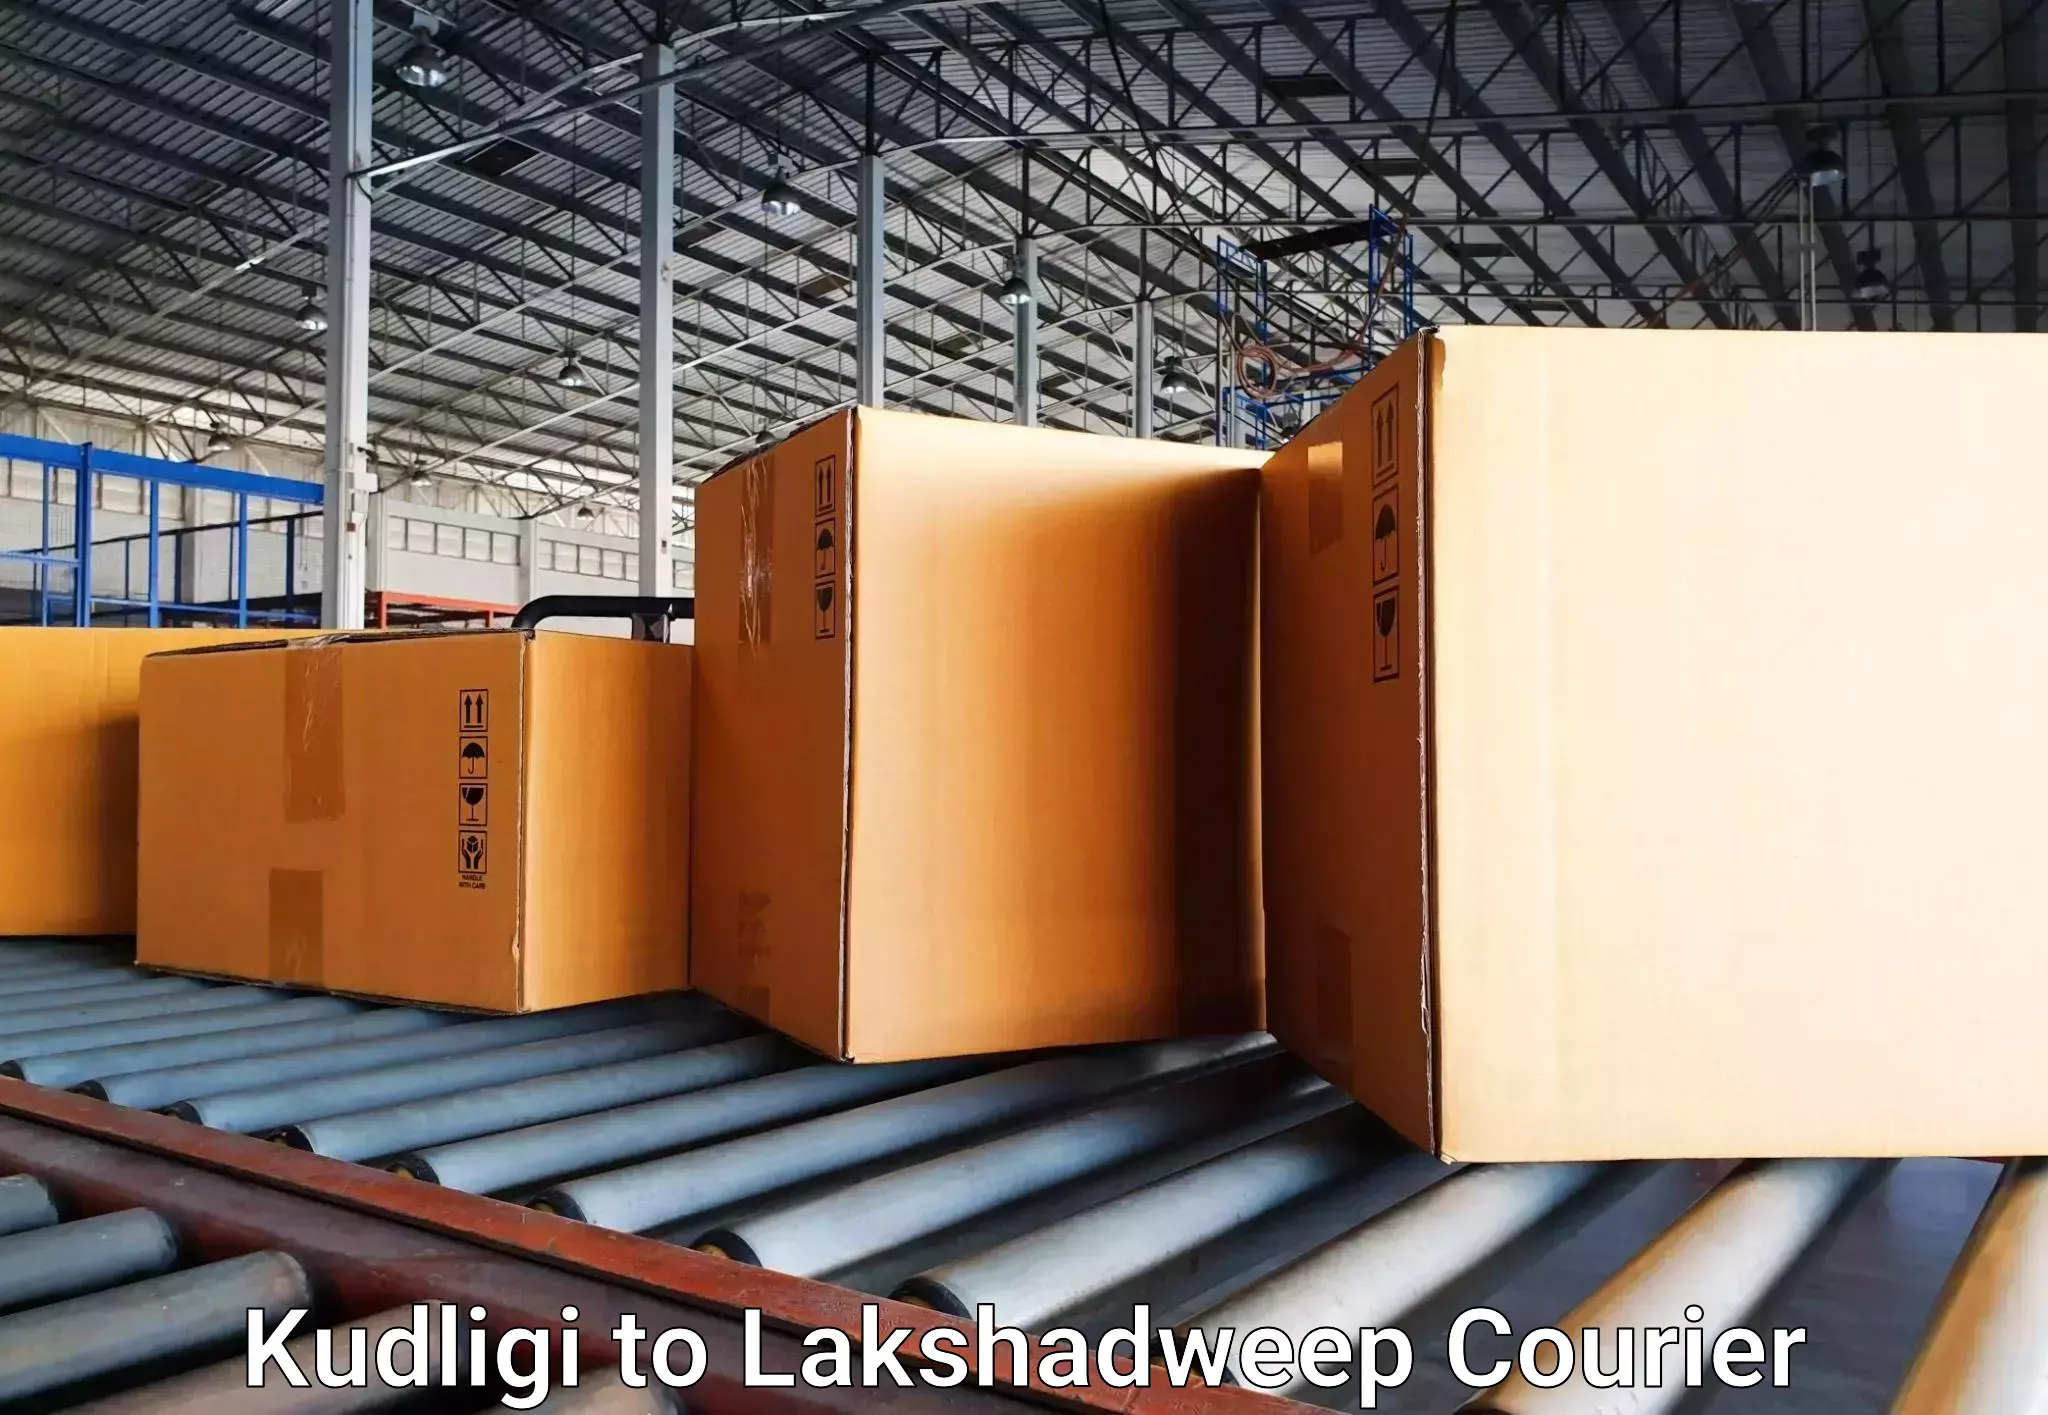 Luggage transport company Kudligi to Lakshadweep